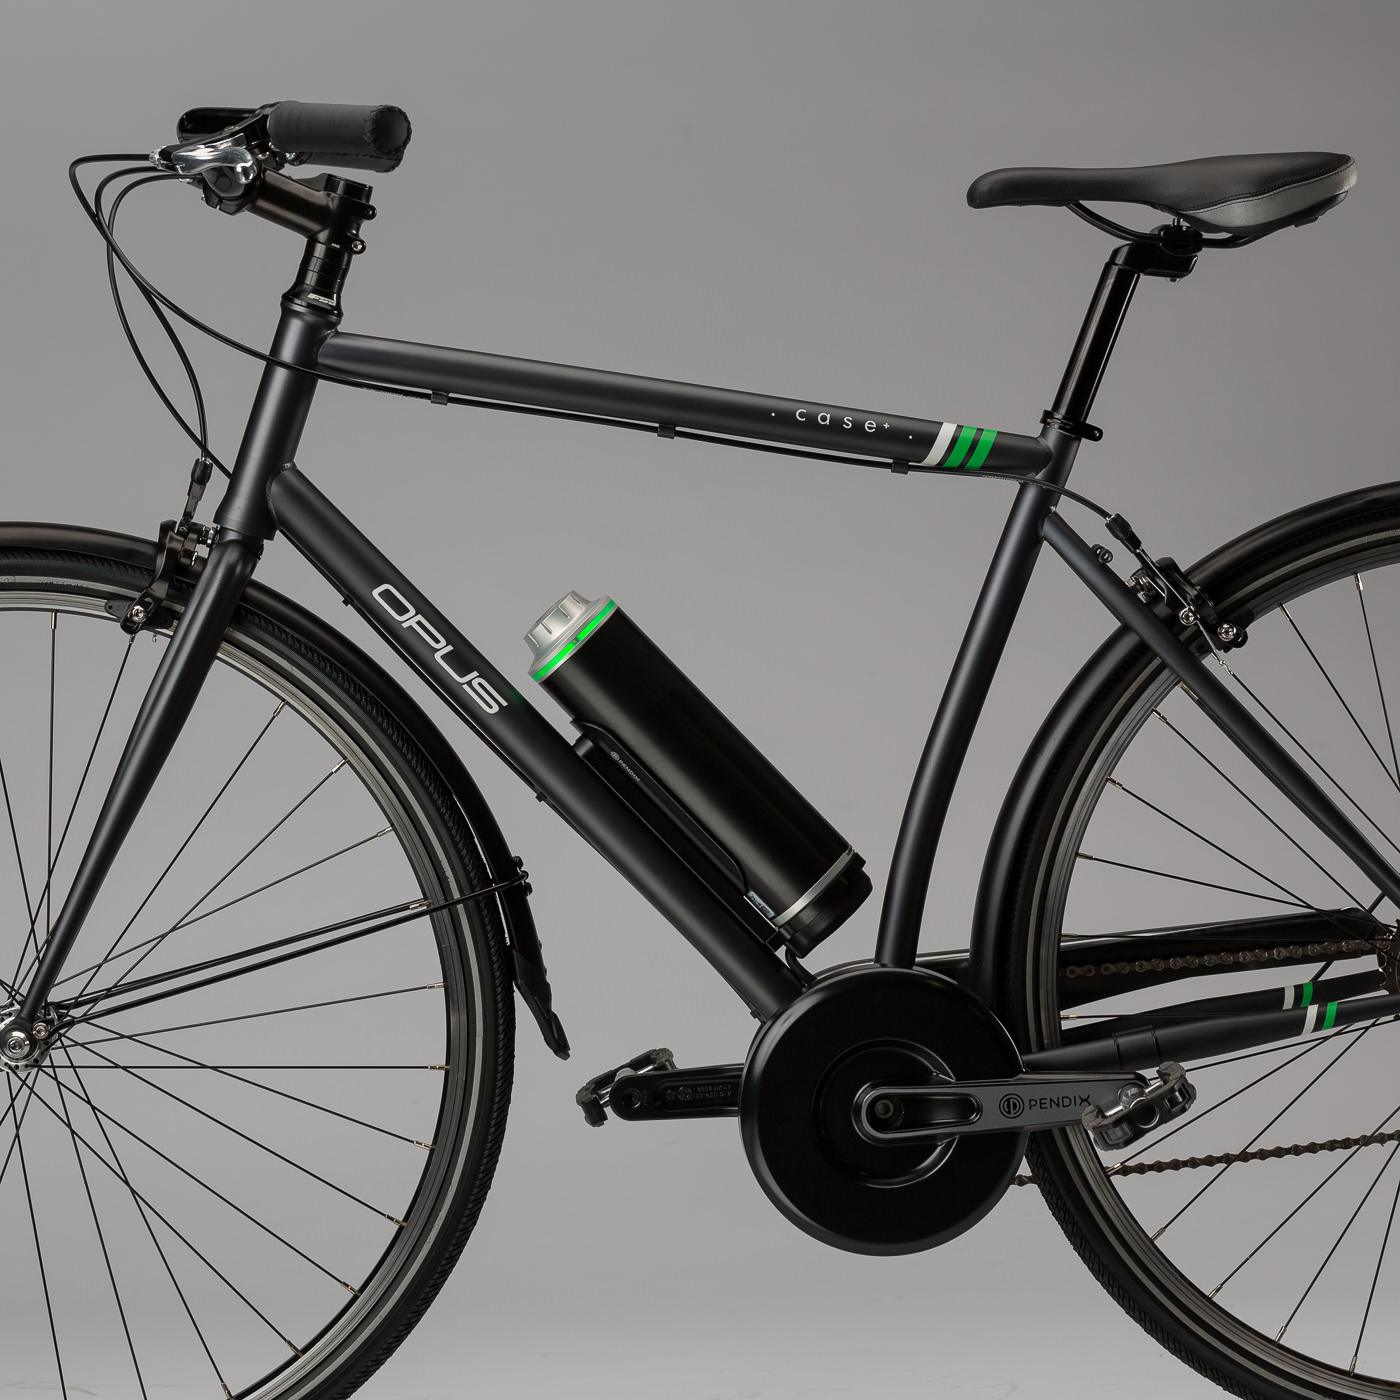 Vélo électrique Opus bike modele case noir